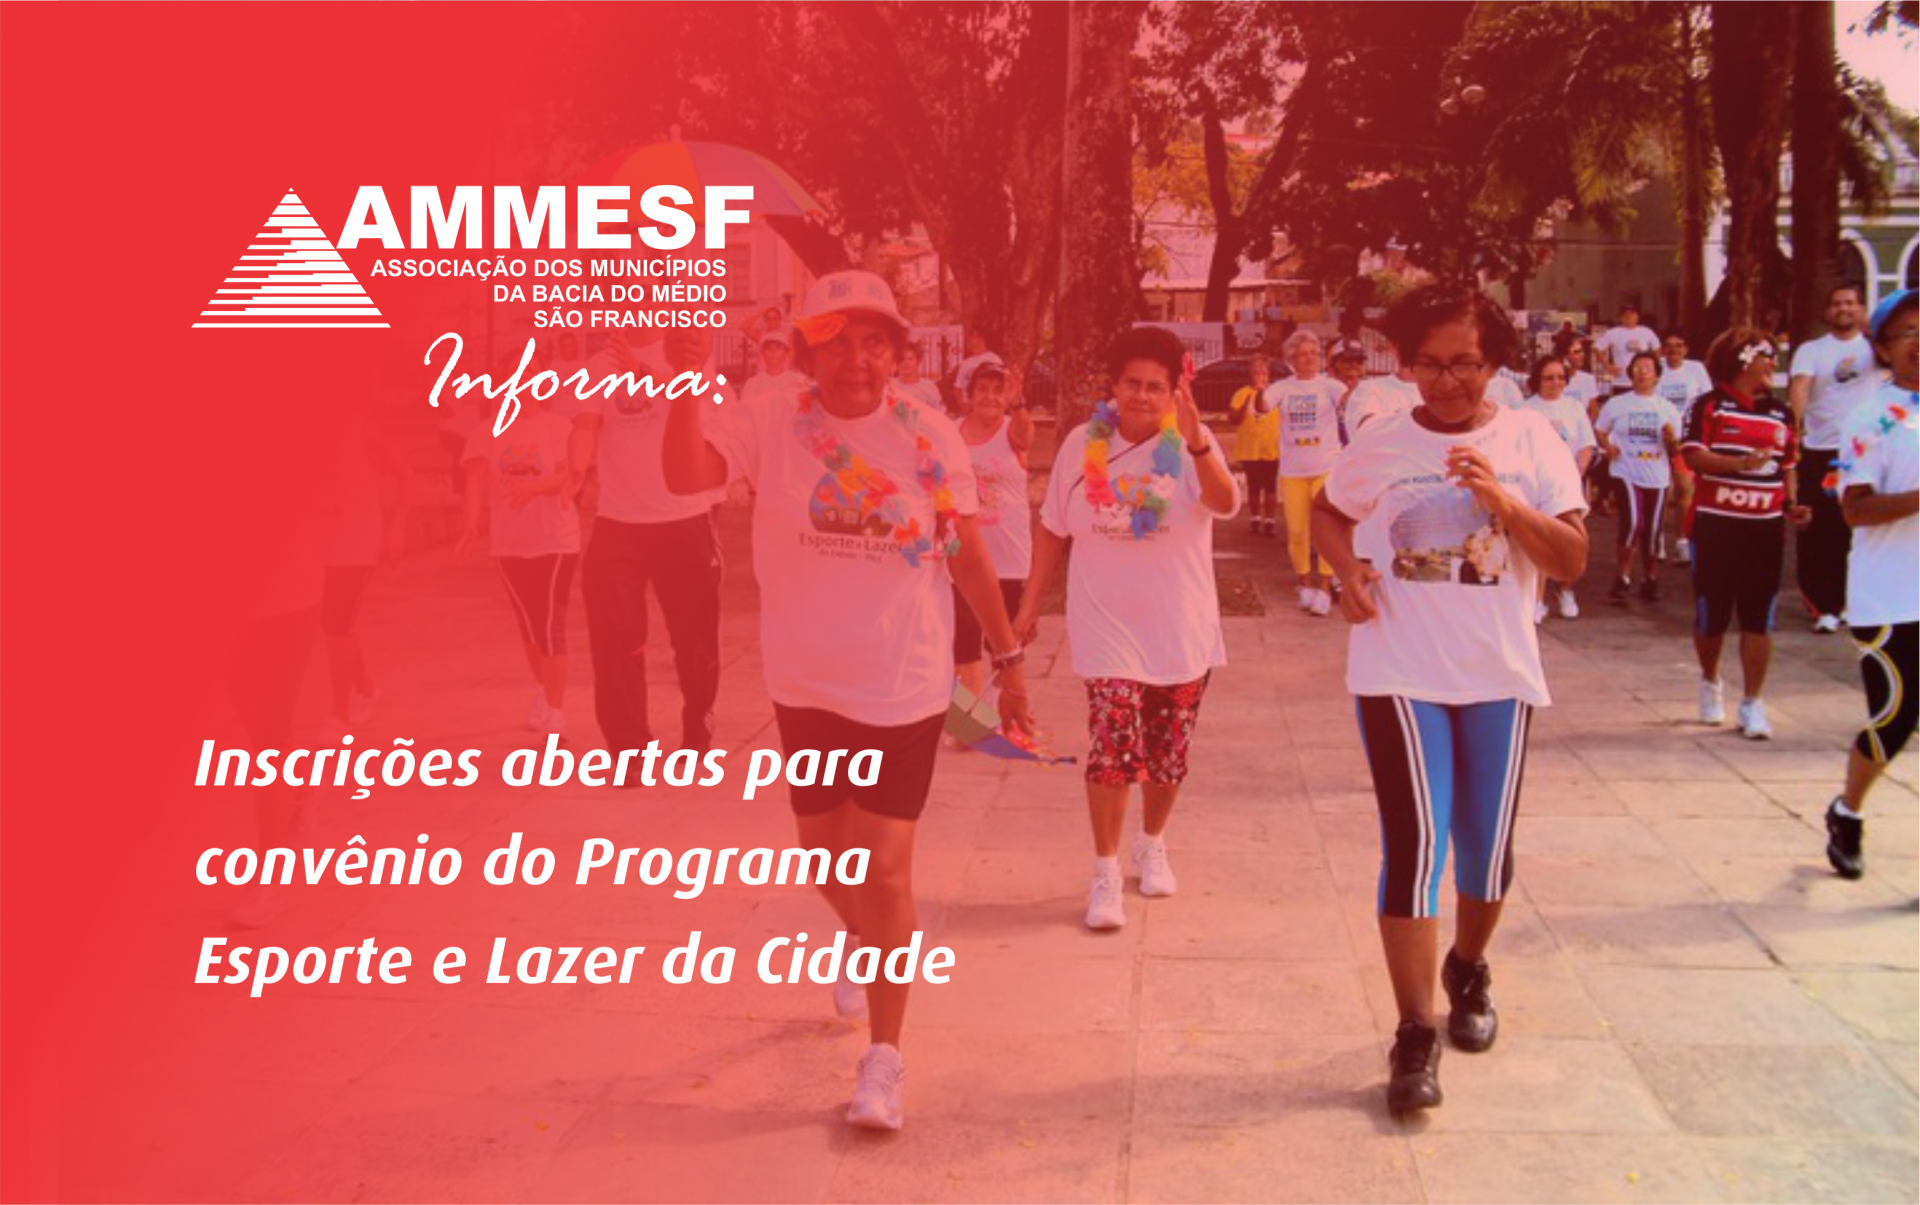 AMMESF informa: inscrições abertas para convênio do Programa Esporte e Lazer da Cidade